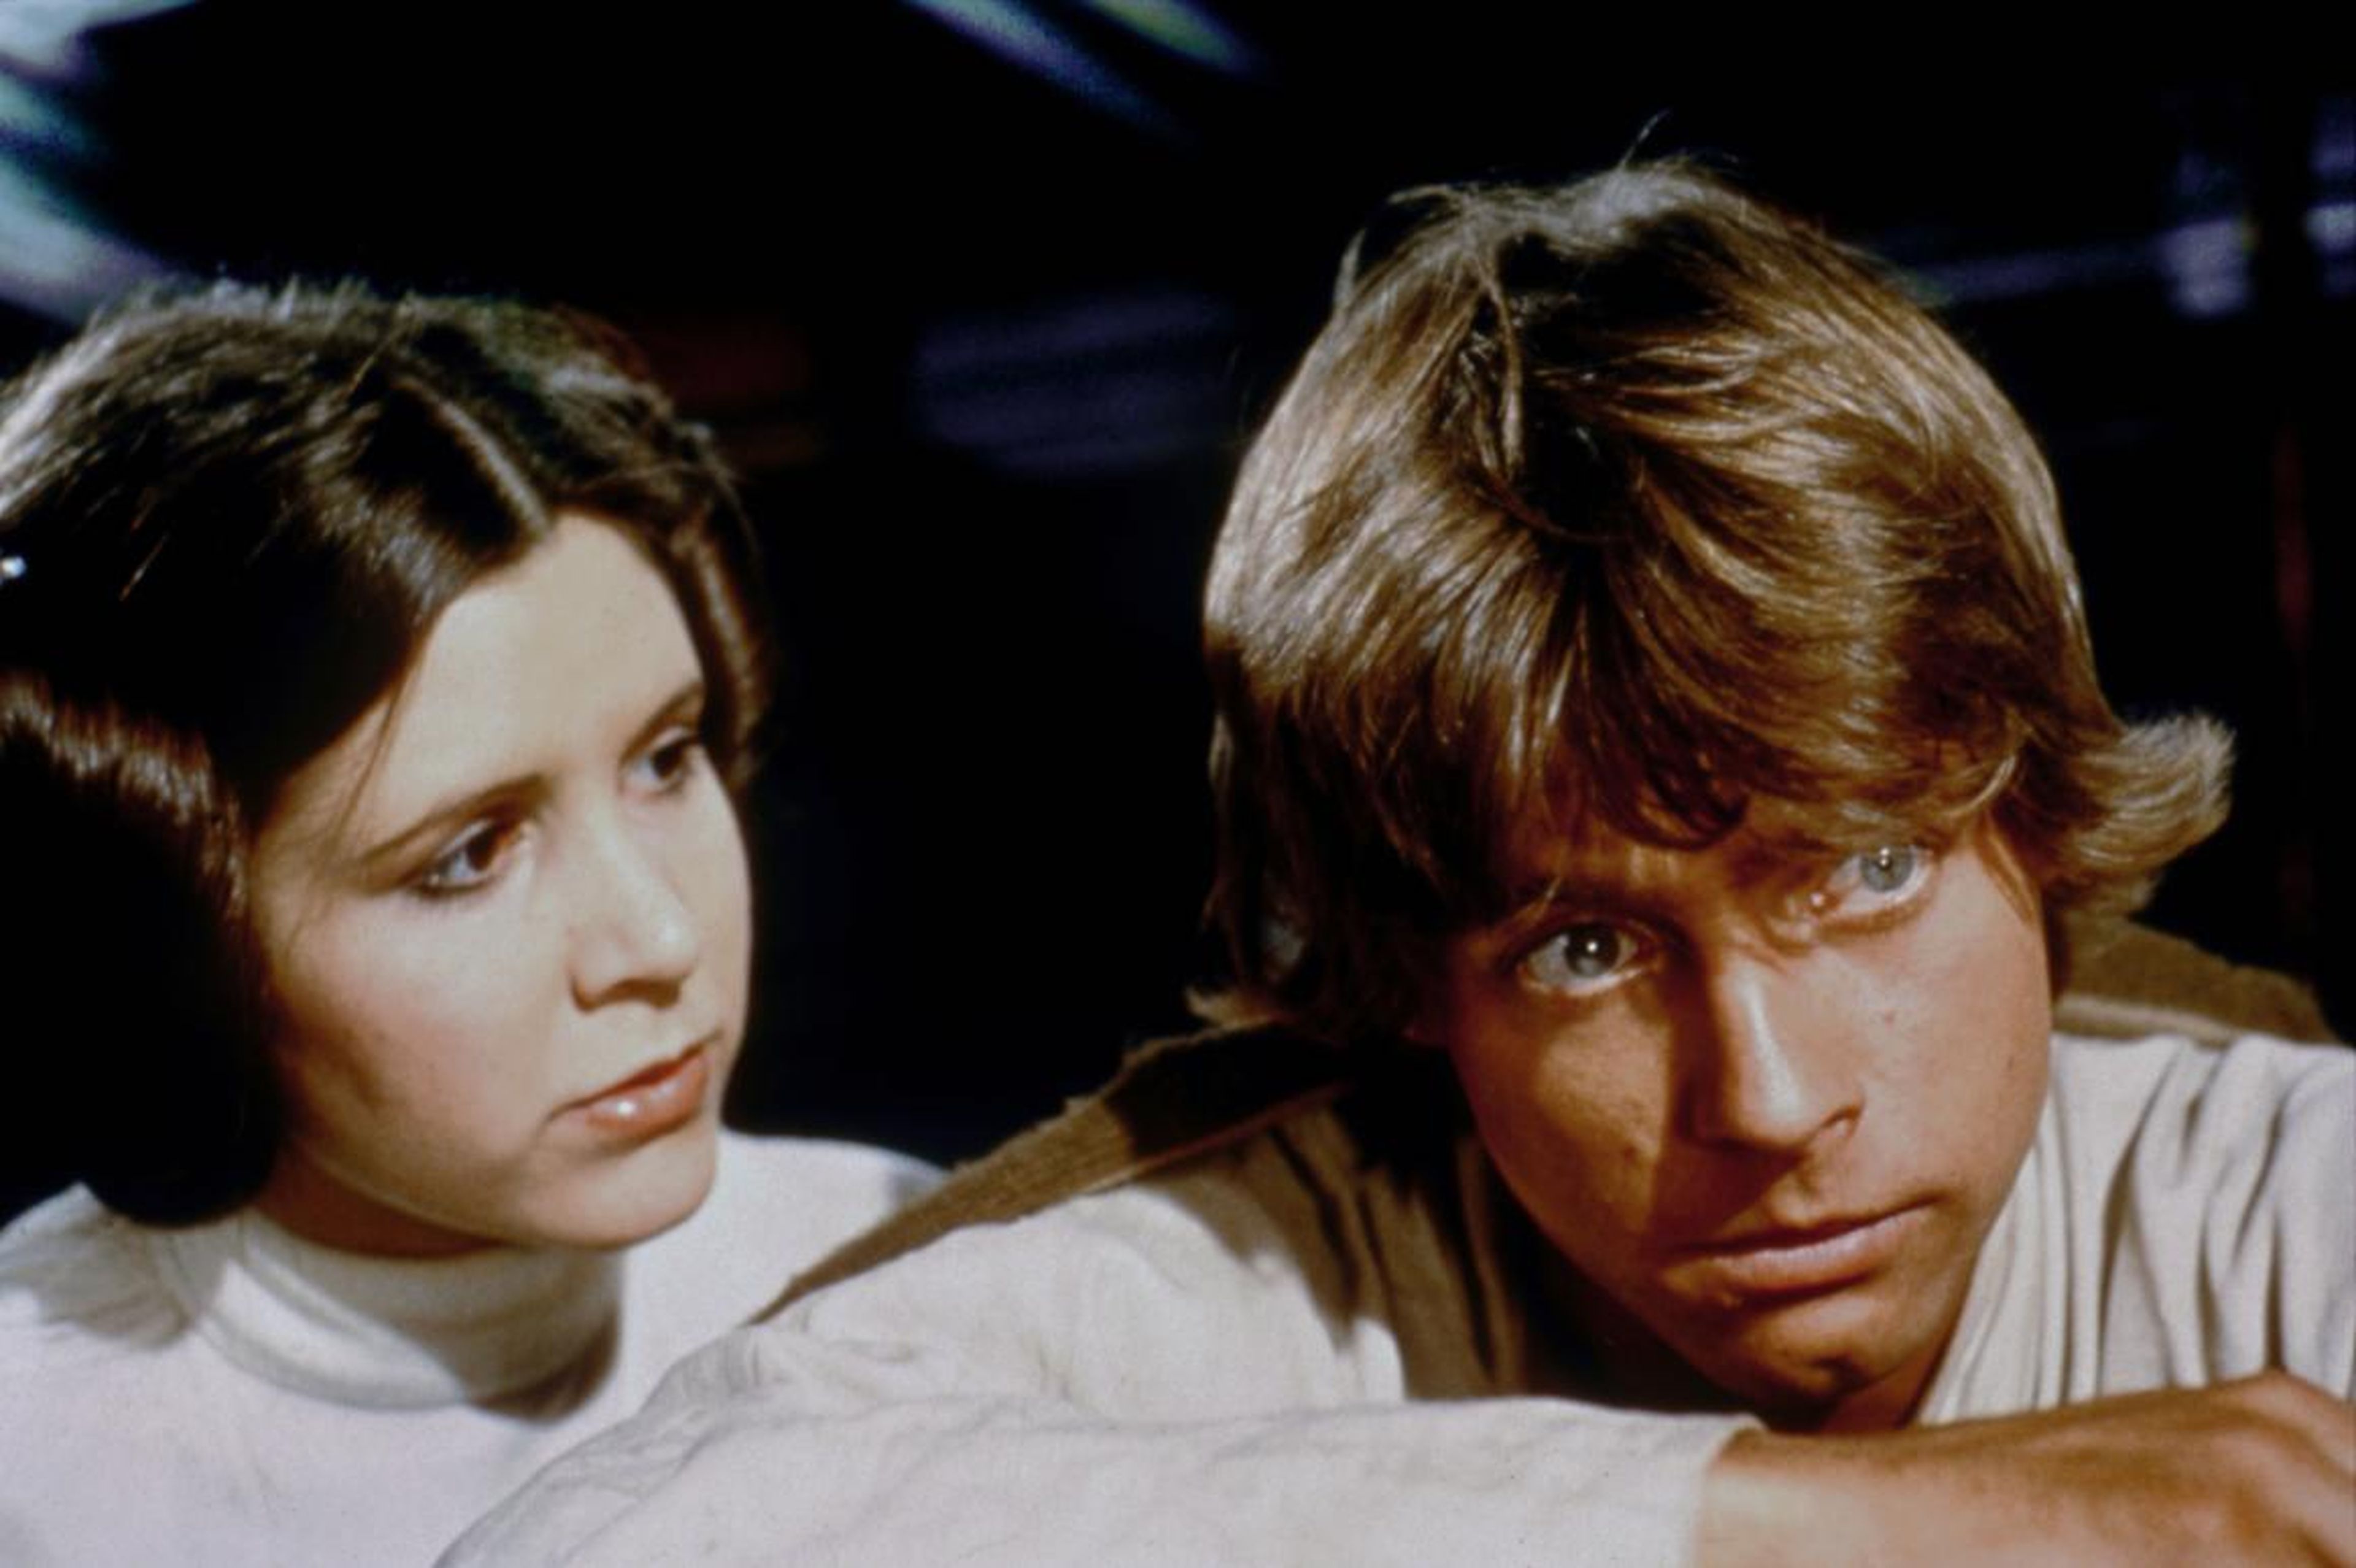 Los actores estadounidenses Carrie Fisher y Mark Hamill en el set de rodaje de 'Star Wars: Episodio IV - Una nueva esperanza'.